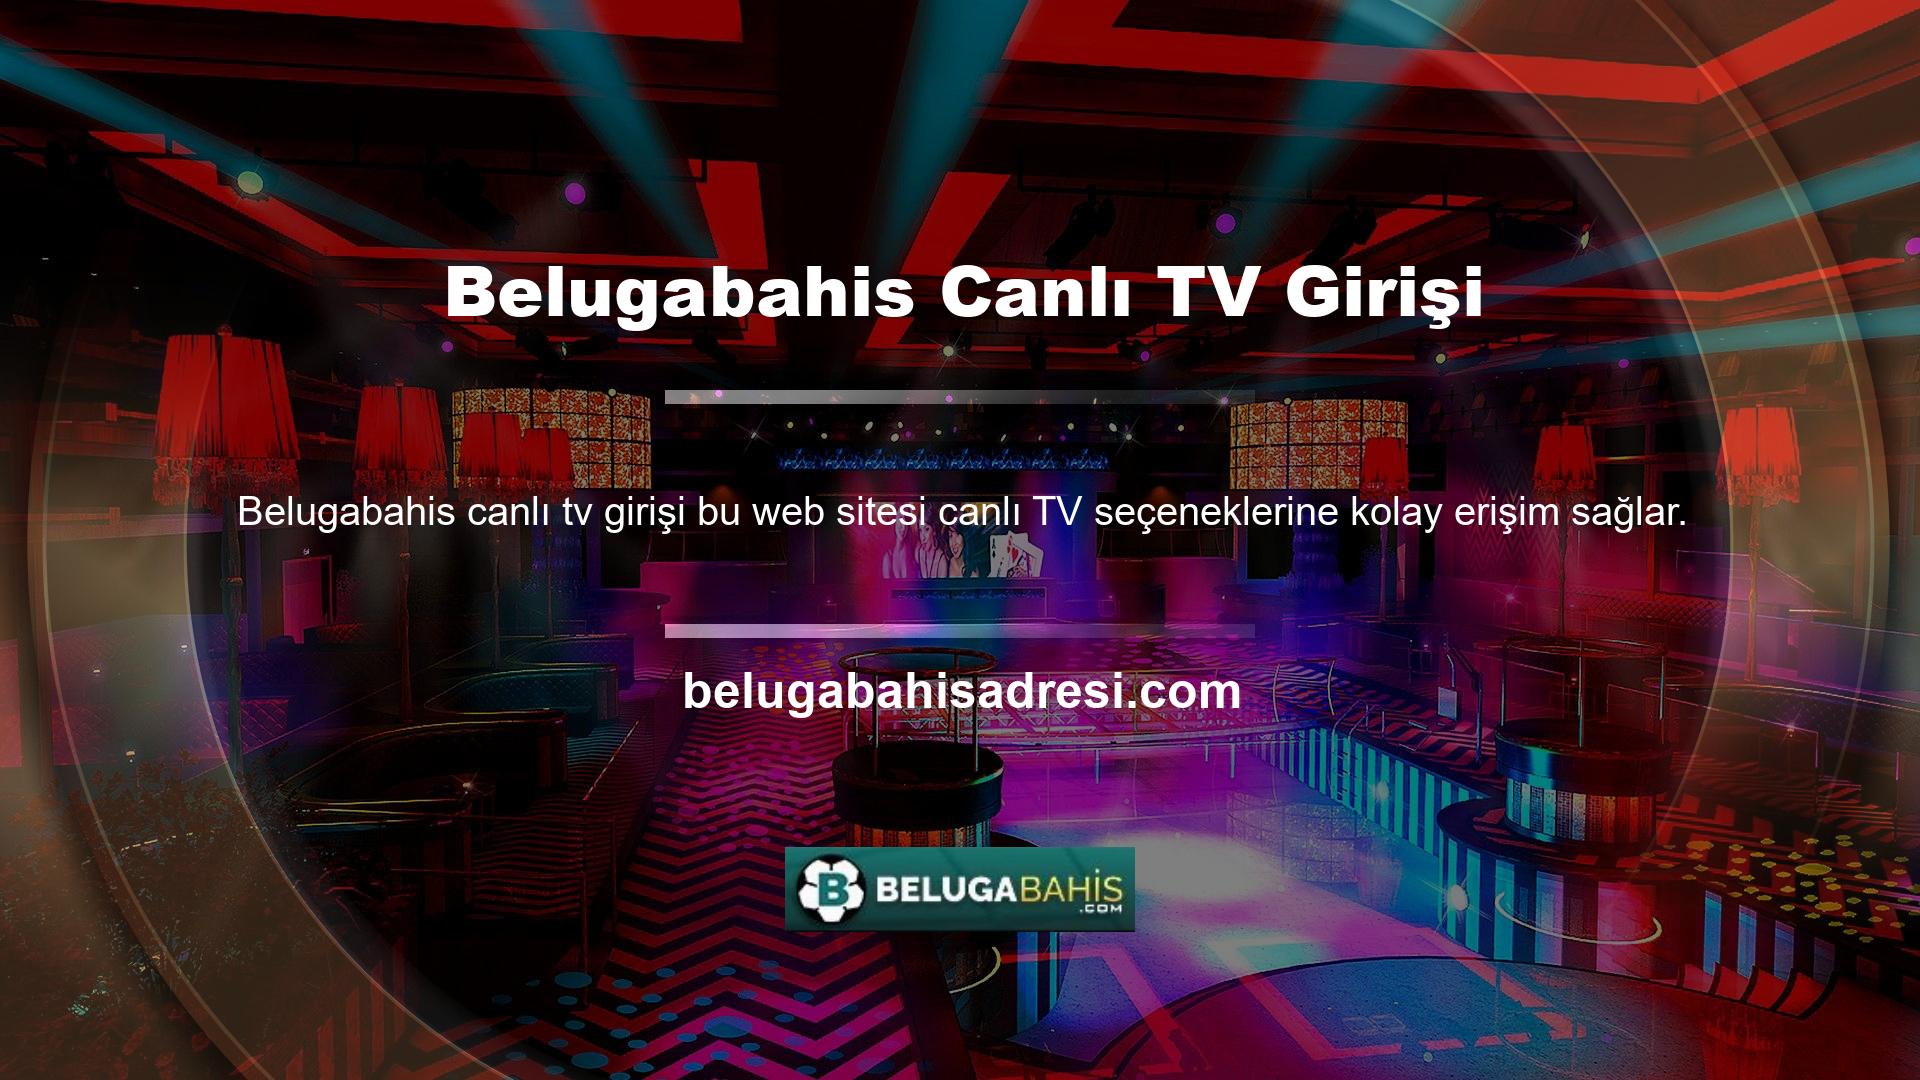 Bu site ortamında Belugabahis Canlı TV bahis programına katıldığınızda programın sağ üst köşesinde Canlı TV logosunu göreceksiniz